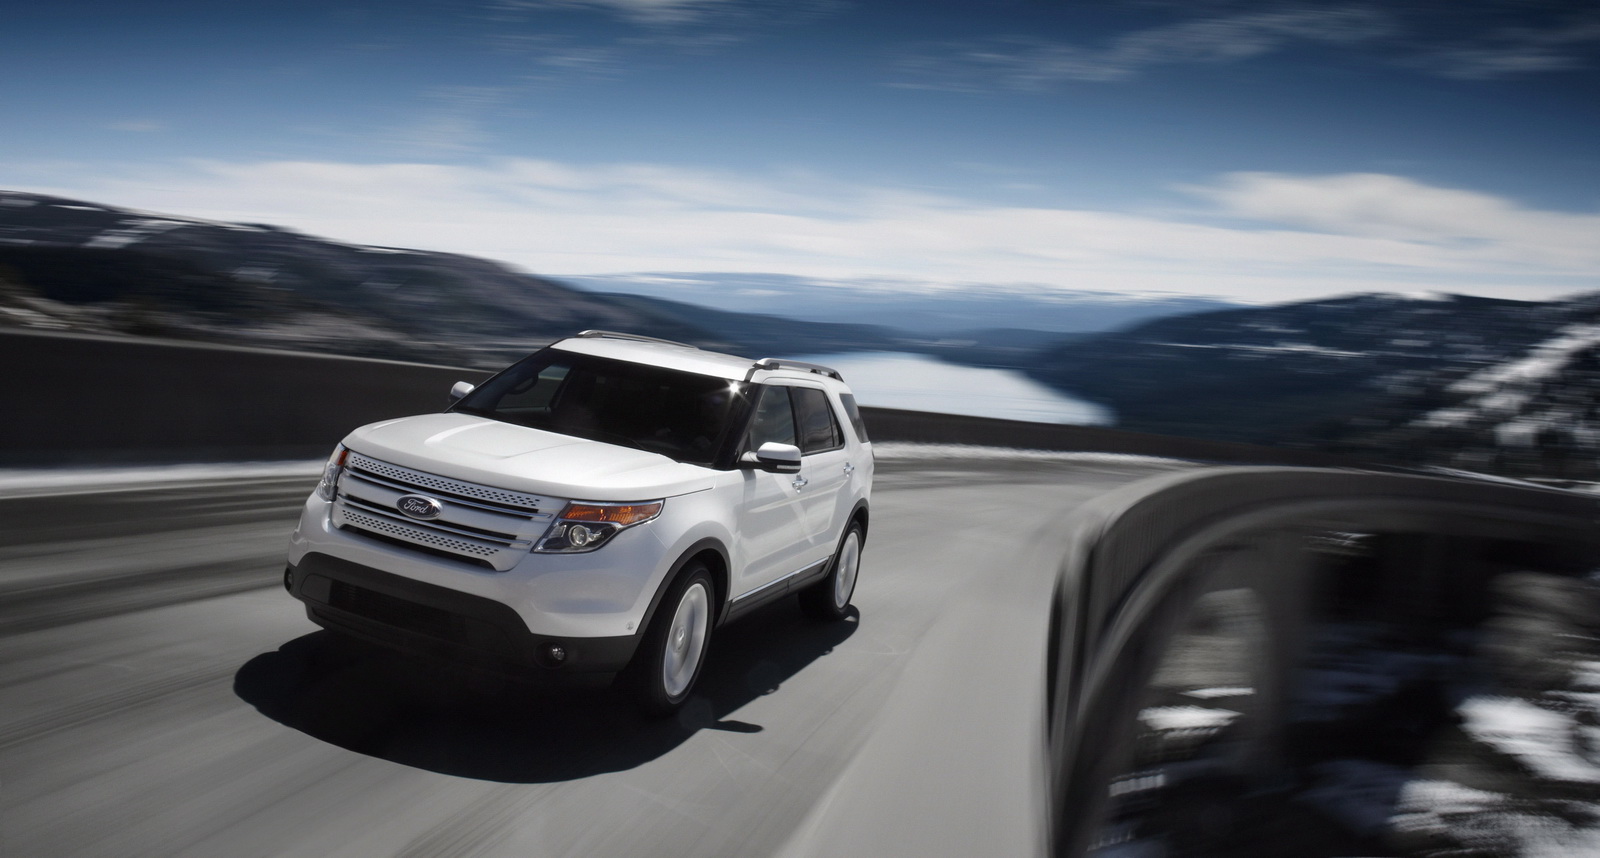 2012 Ford explorer sales figures #8